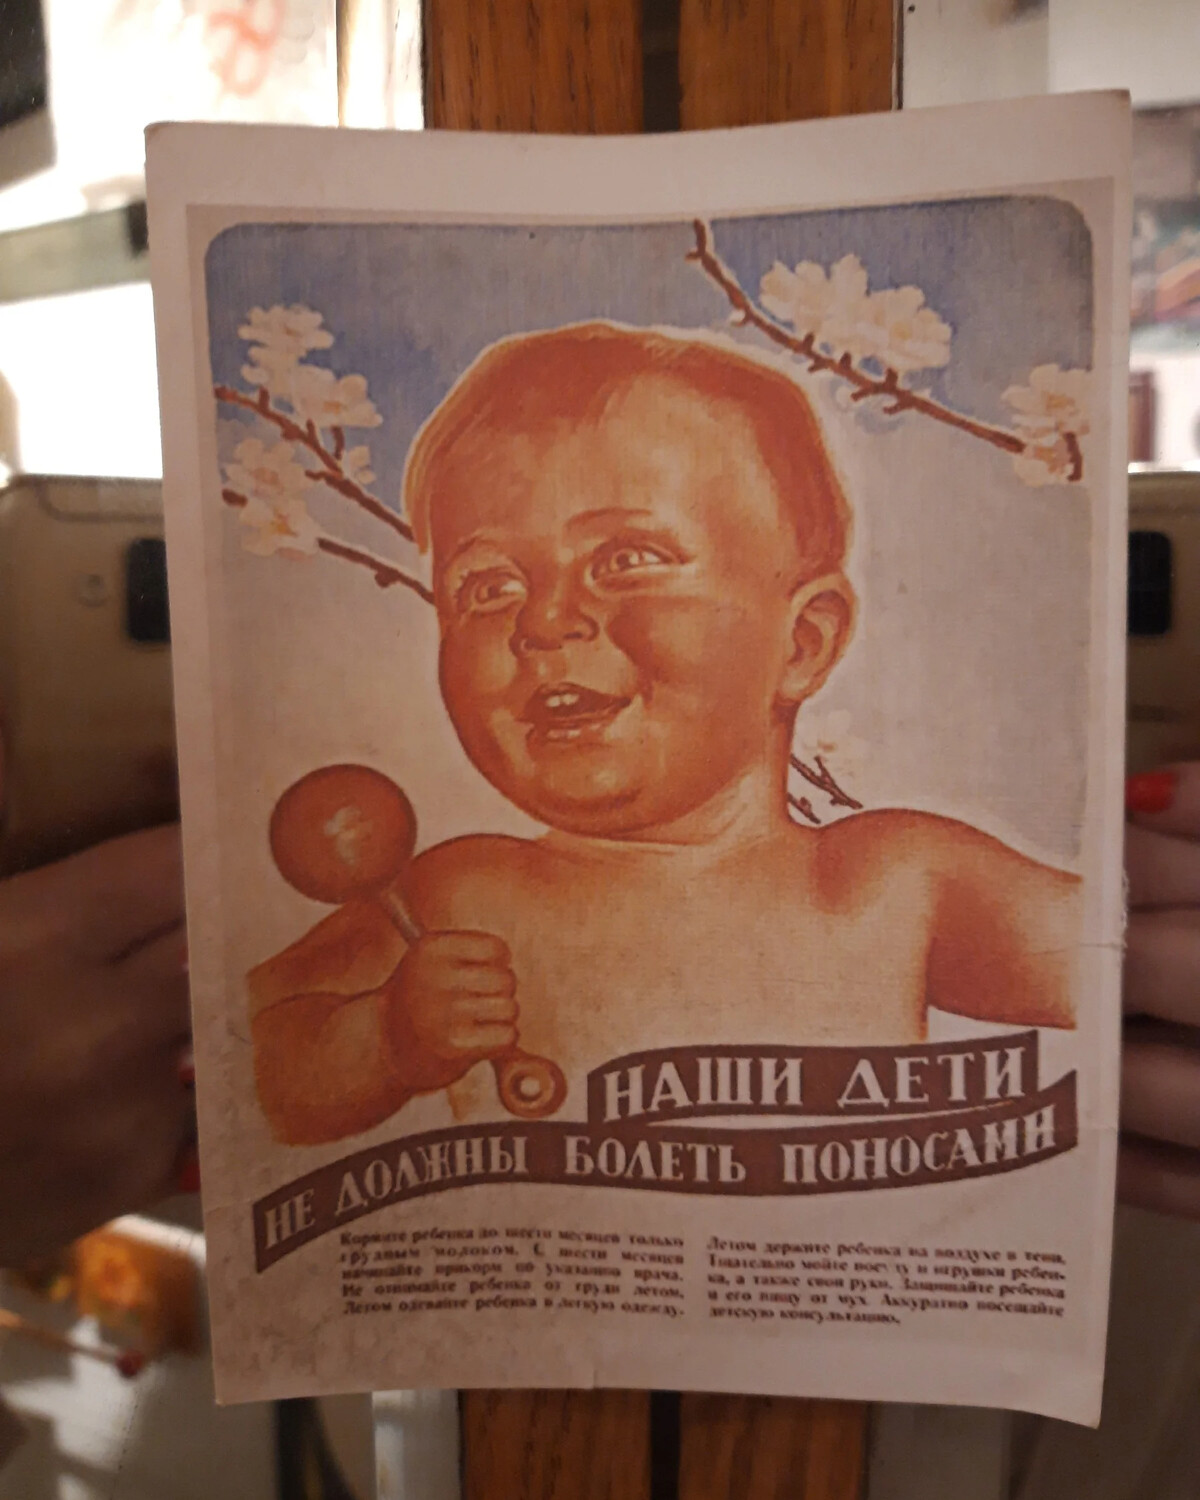 Плакат наглядной агитации. Дети не должны болеть поносами плакат. Плакат наши дети не должны болеть. Плакат СССР наши дети не должны болеть поносами. Плакат наши дети не болеют поносами.